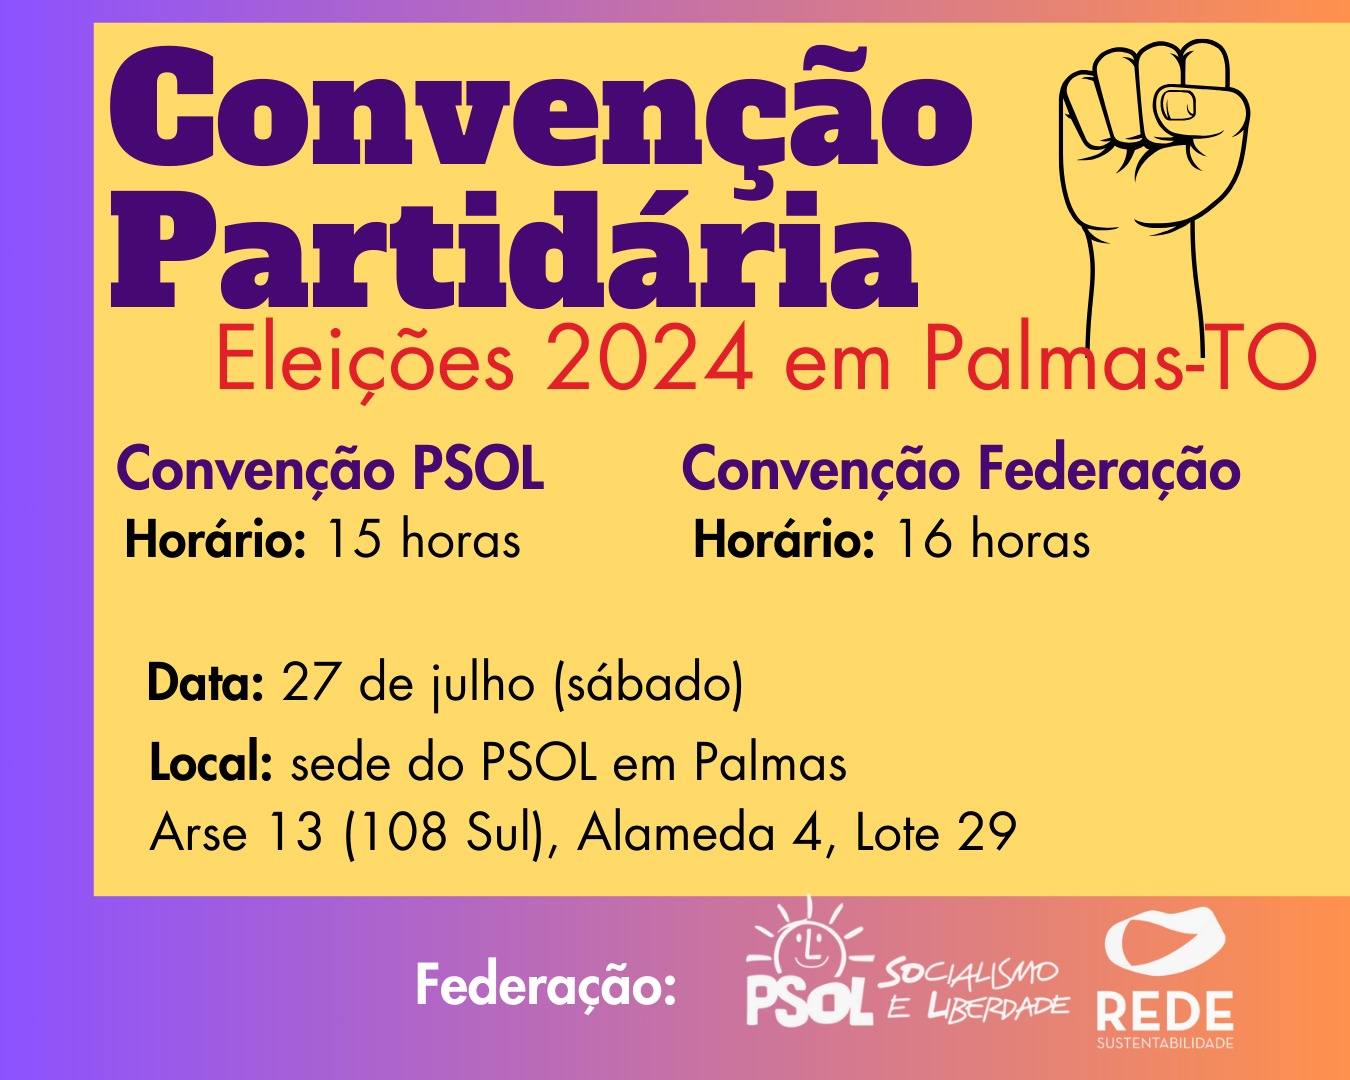 Federação PSOL-REDE de Palmas realiza sua convenção partidária neste sábado, 27